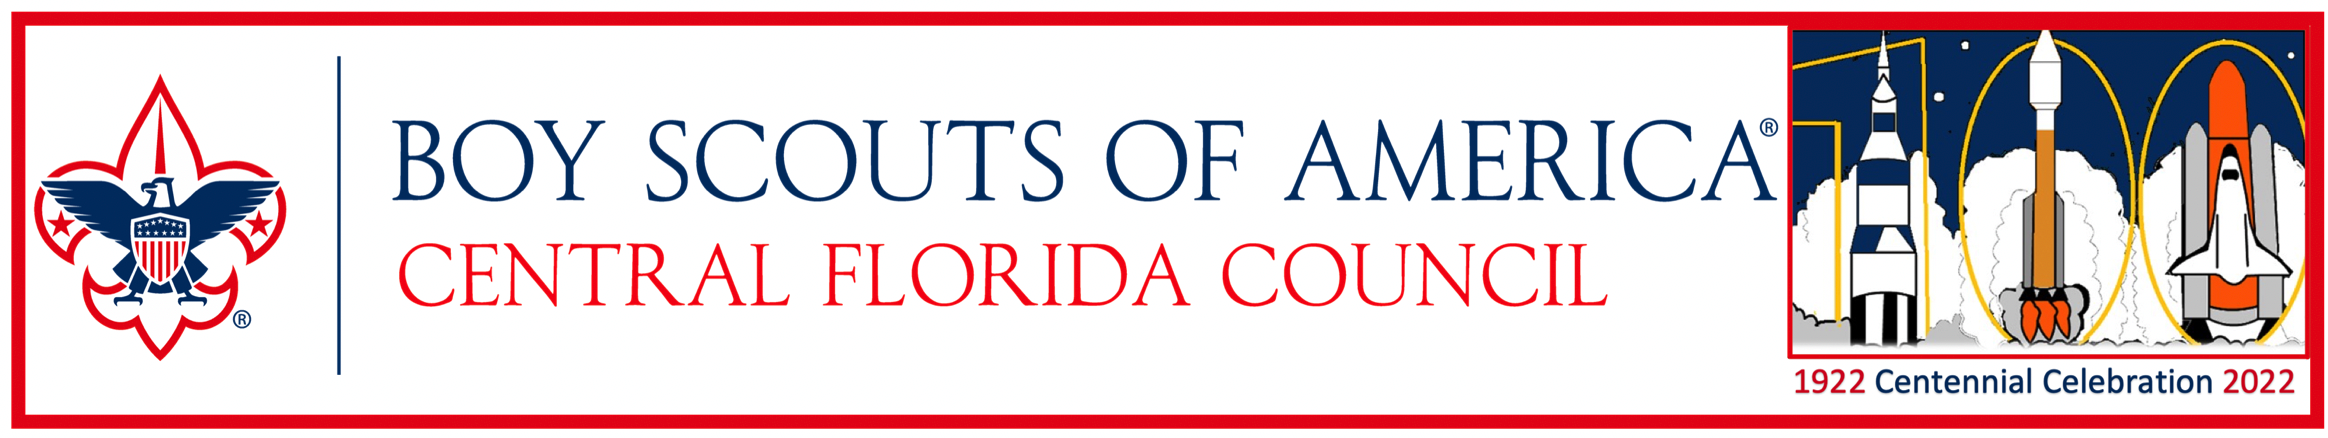 Central Florida Council